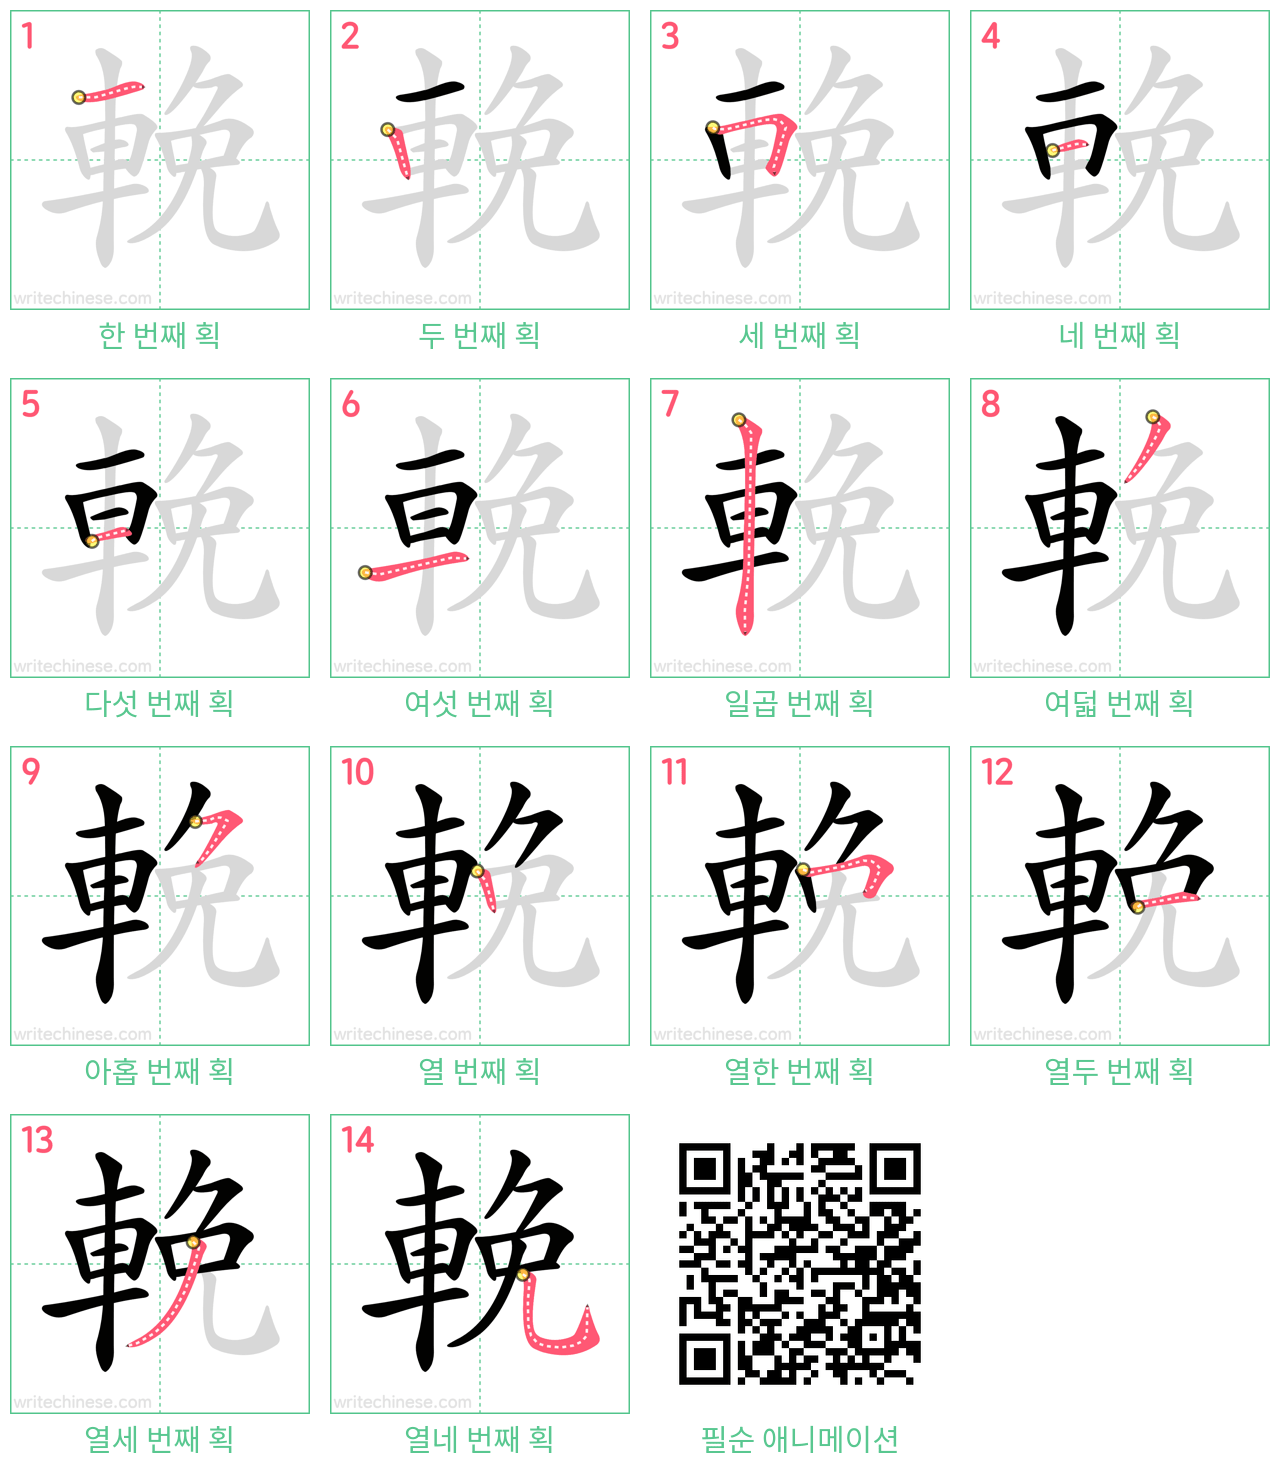 輓 step-by-step stroke order diagrams